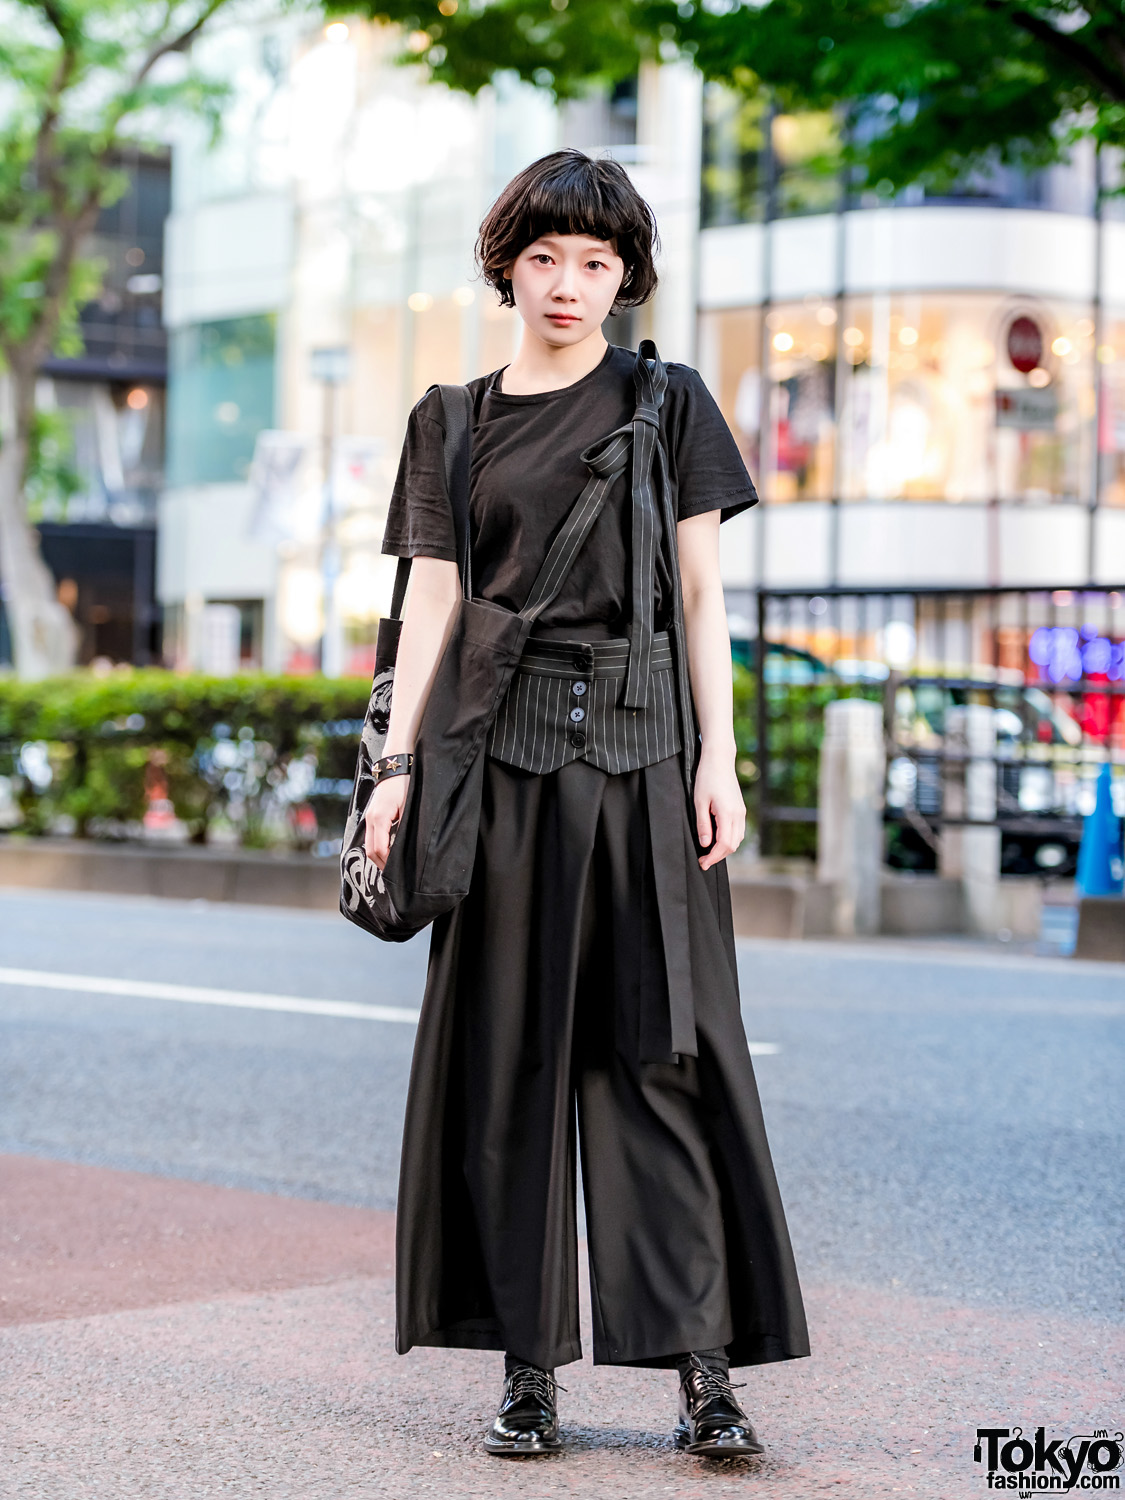 Minimalist Japanese Street Fashion w/ Yohji Yamamoto, 3/4